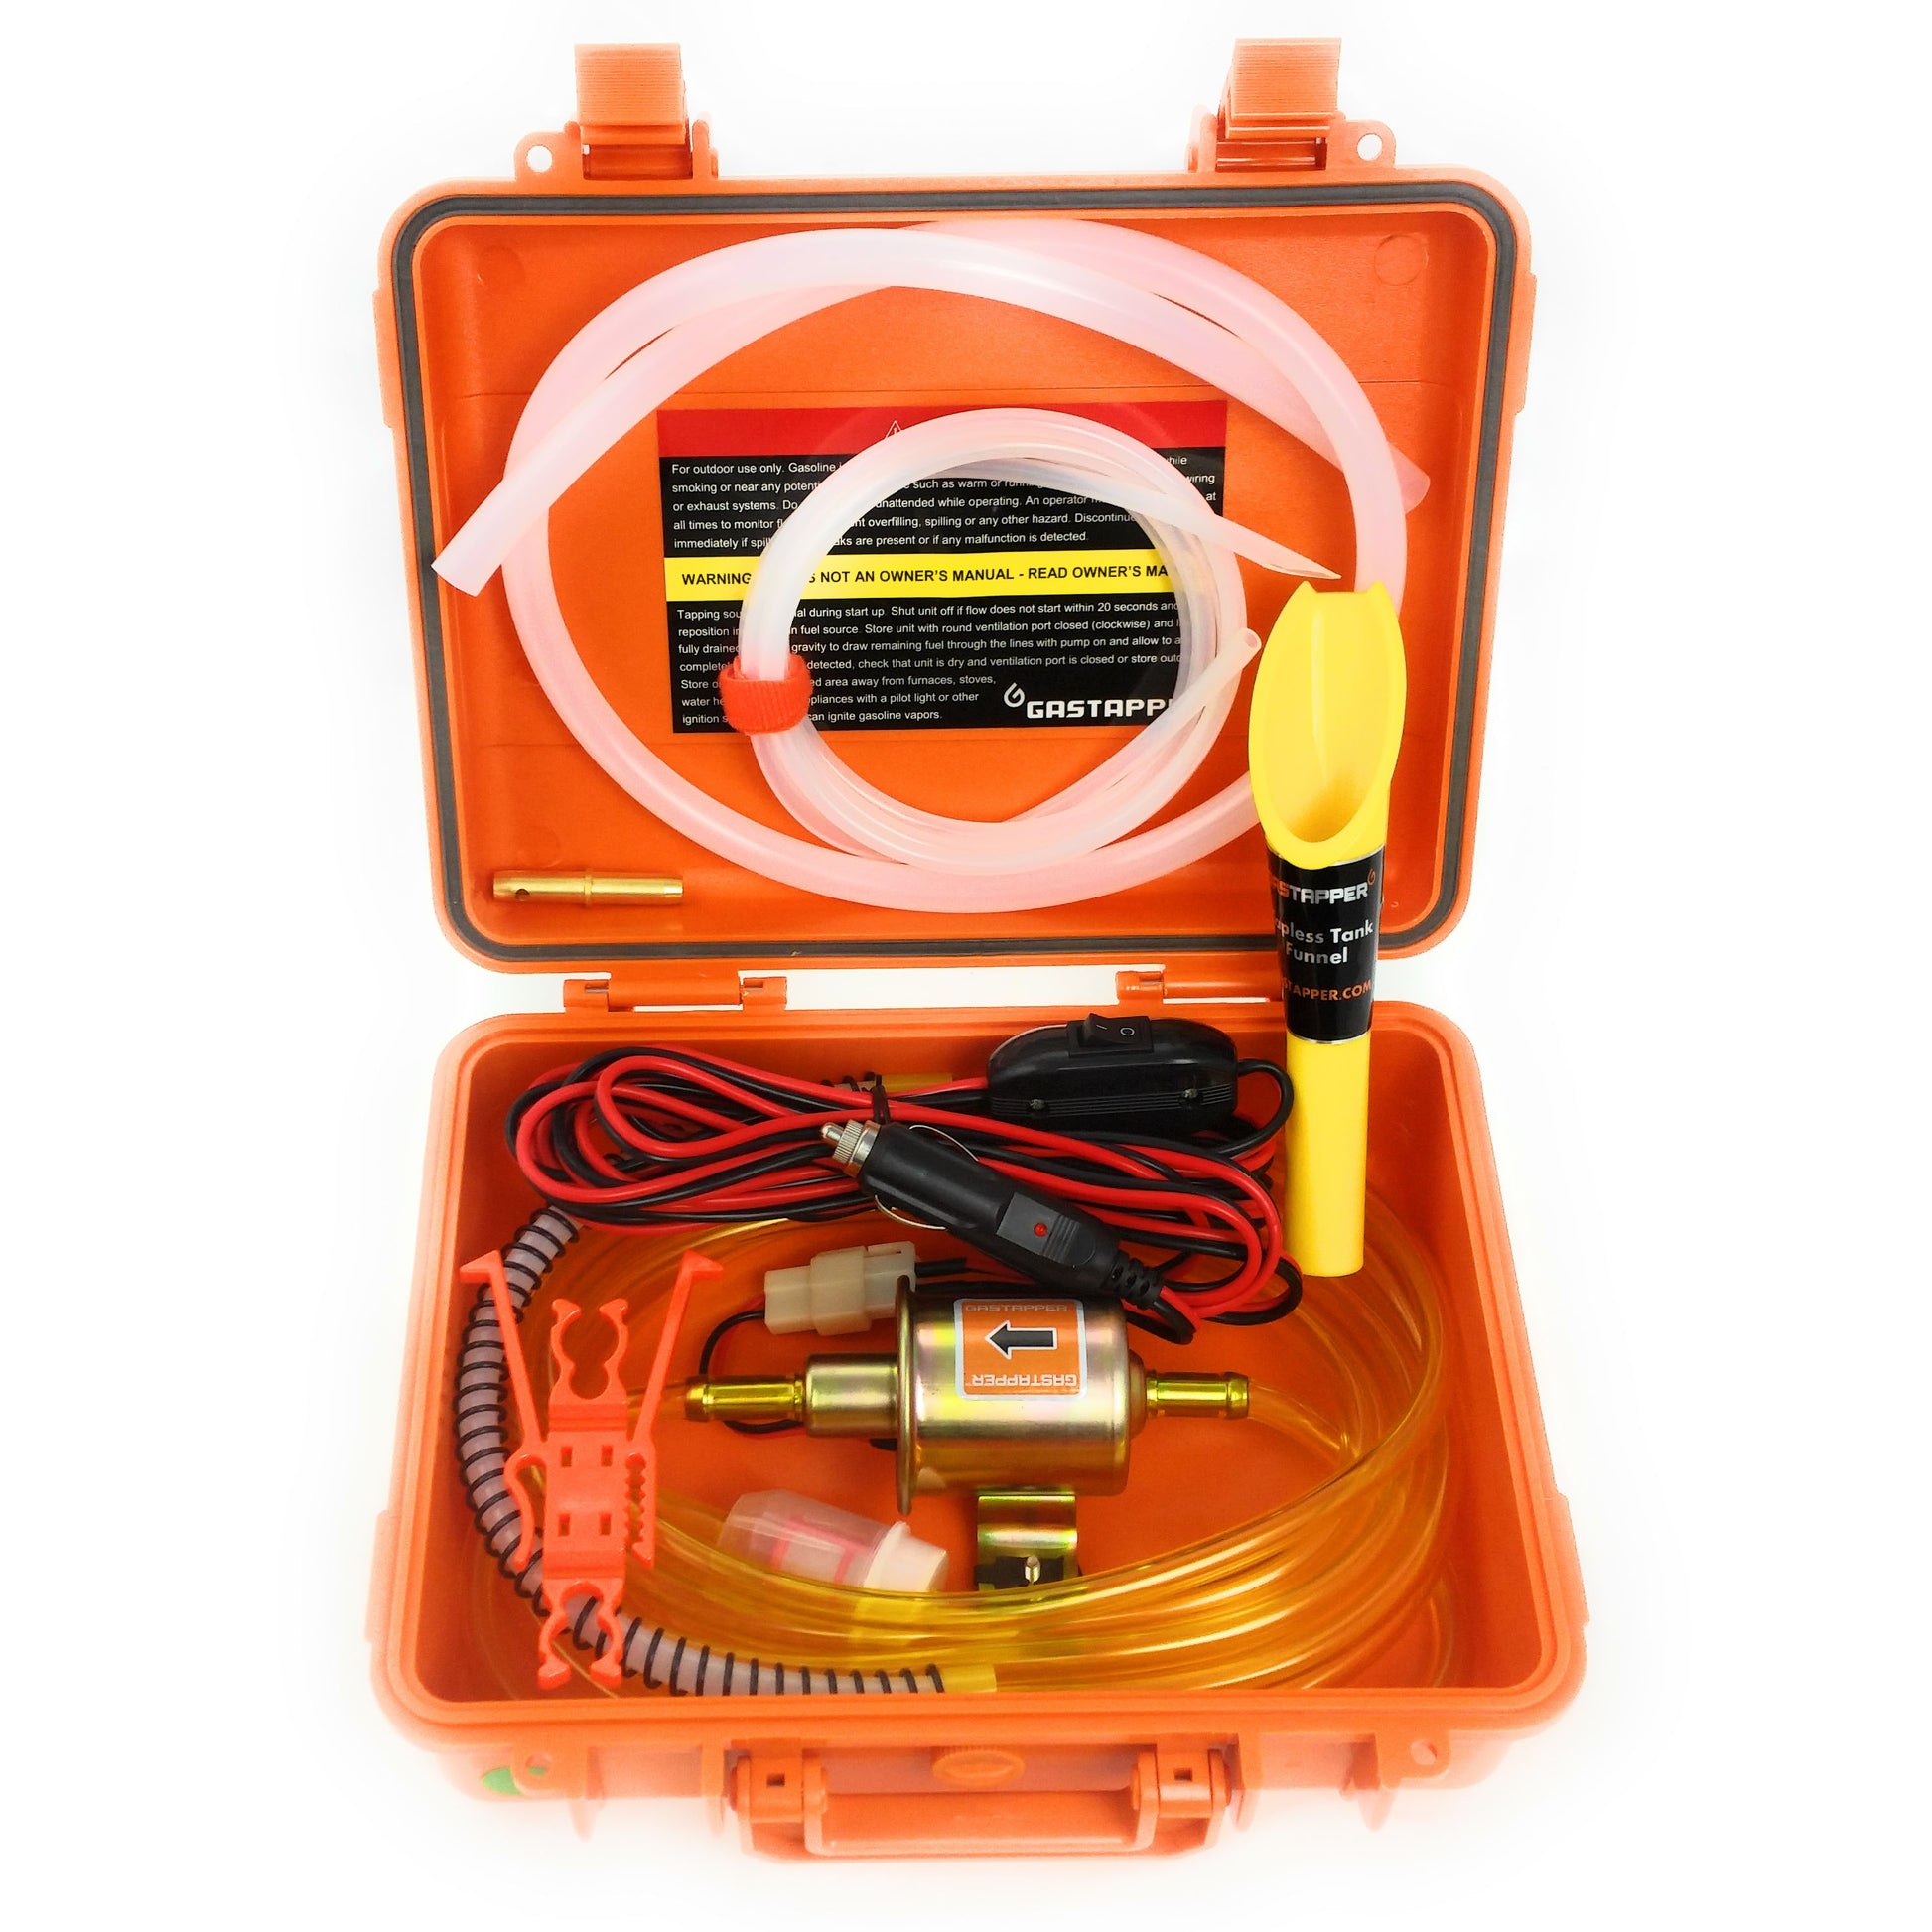 GasTapper Standard 12-volt fuel transfer kit in orange fume proof case main image 